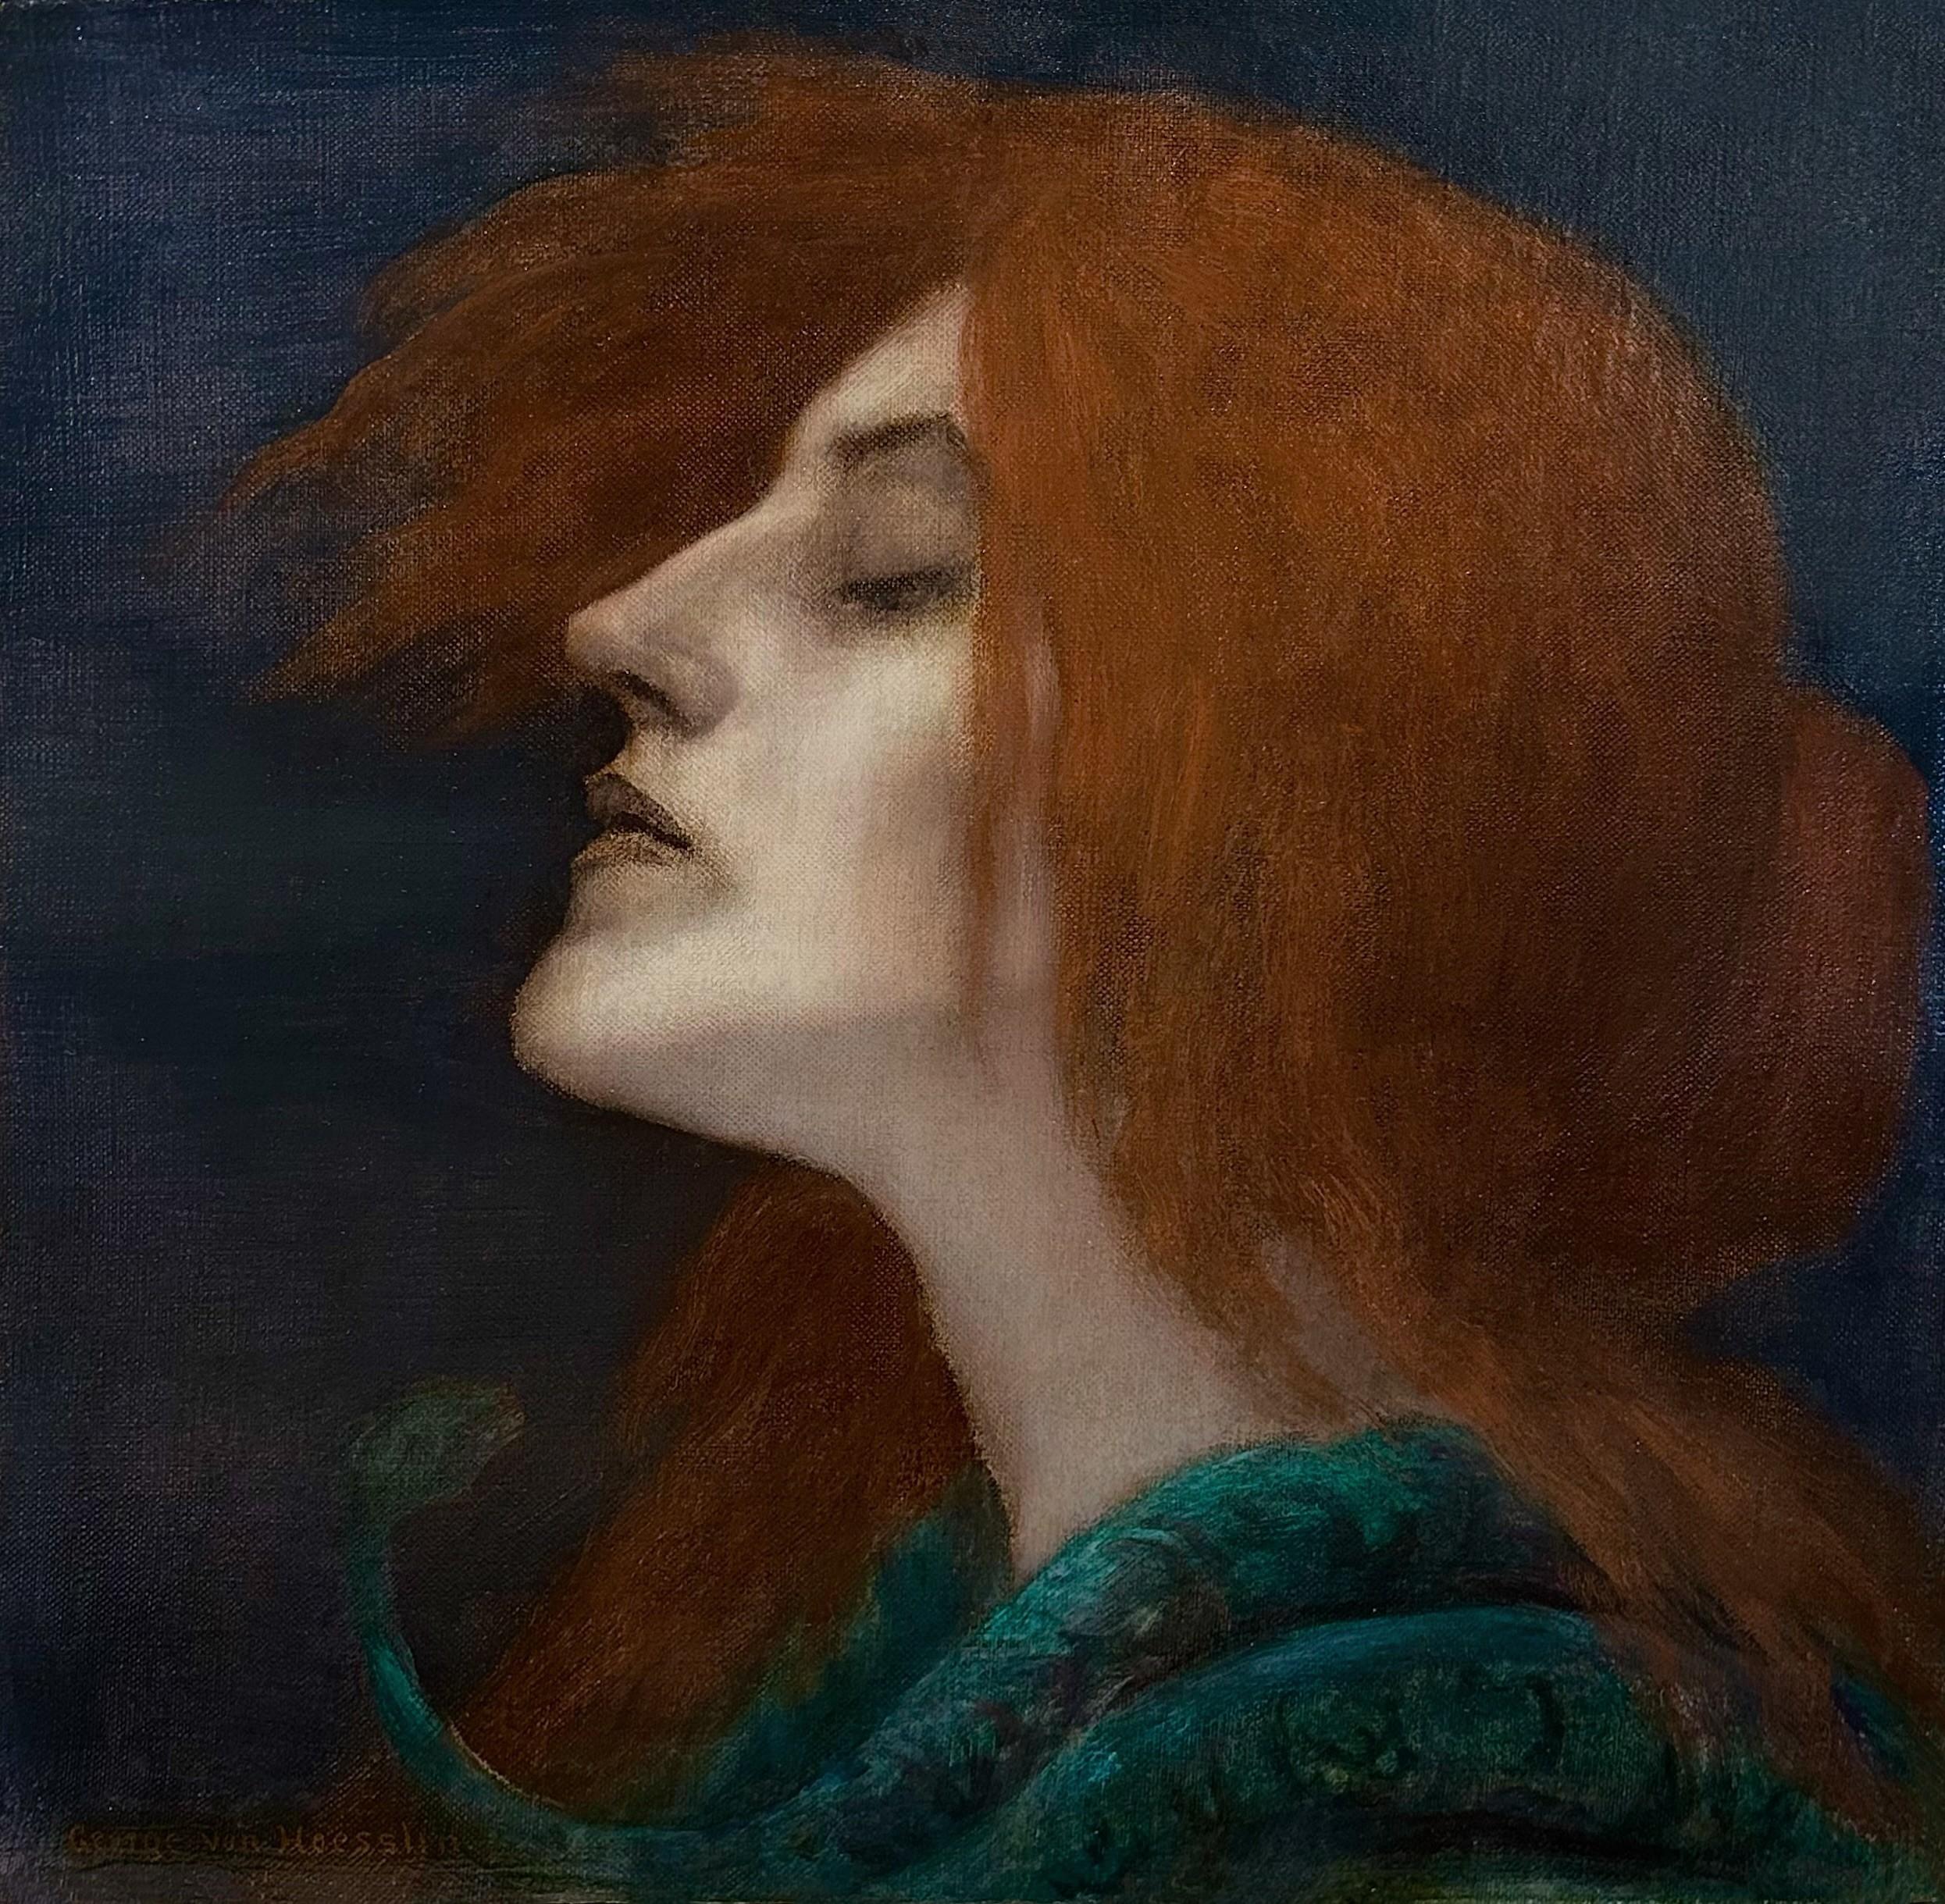 Portrait Painting George Von Hoesslin - Lilith et le serpent, huile sur toile, portrait mythique de femme fatale, signé